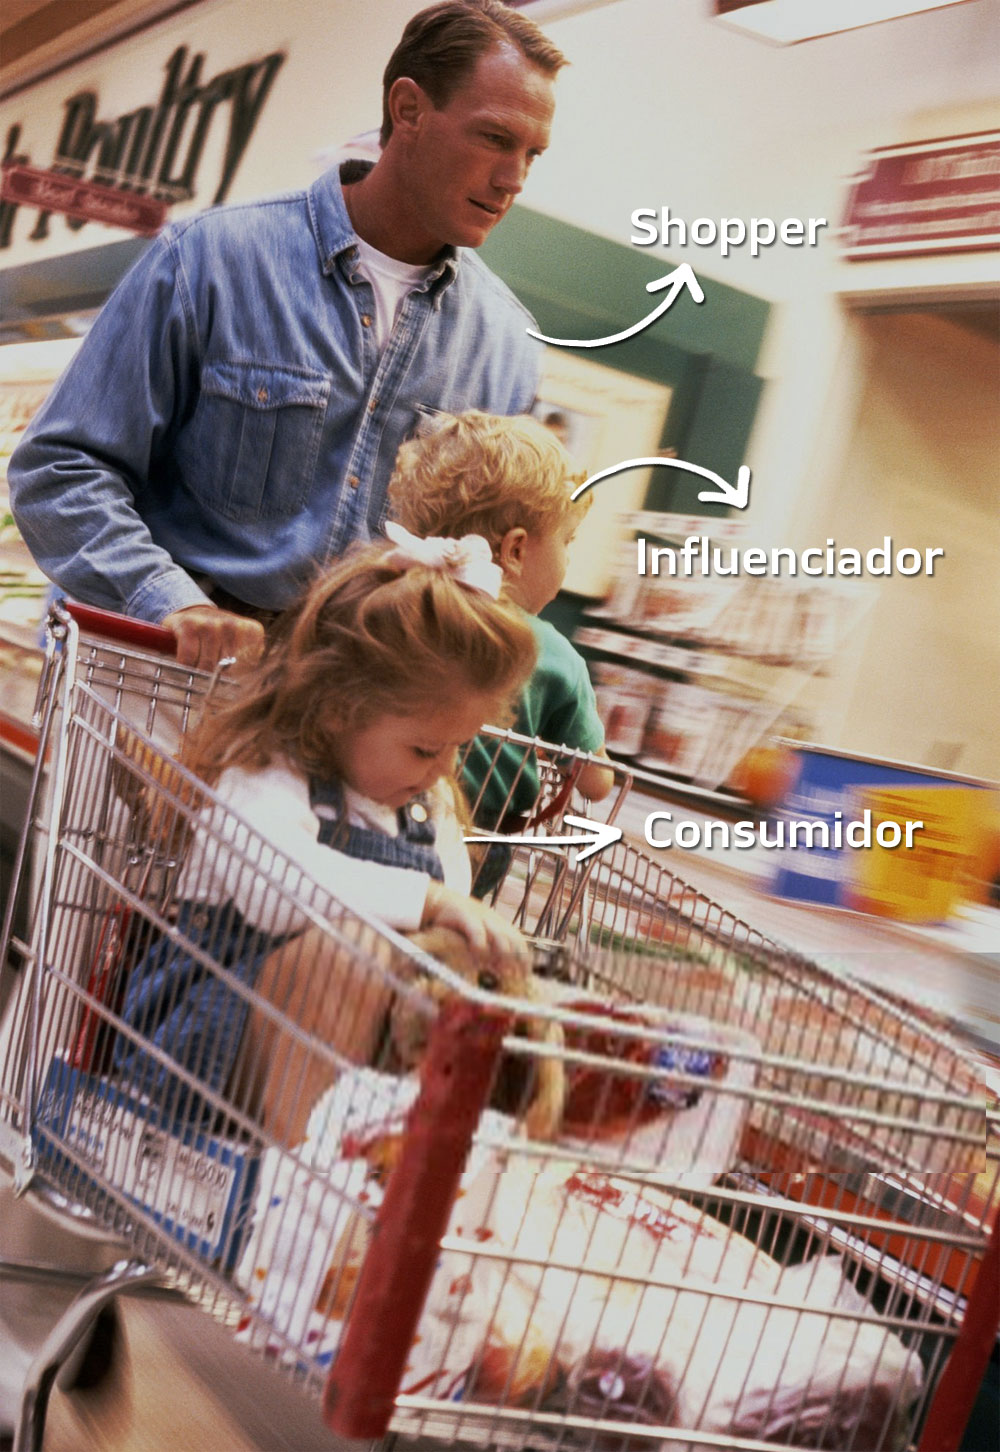 Grafico imagen consumidor, influenciador y shopper